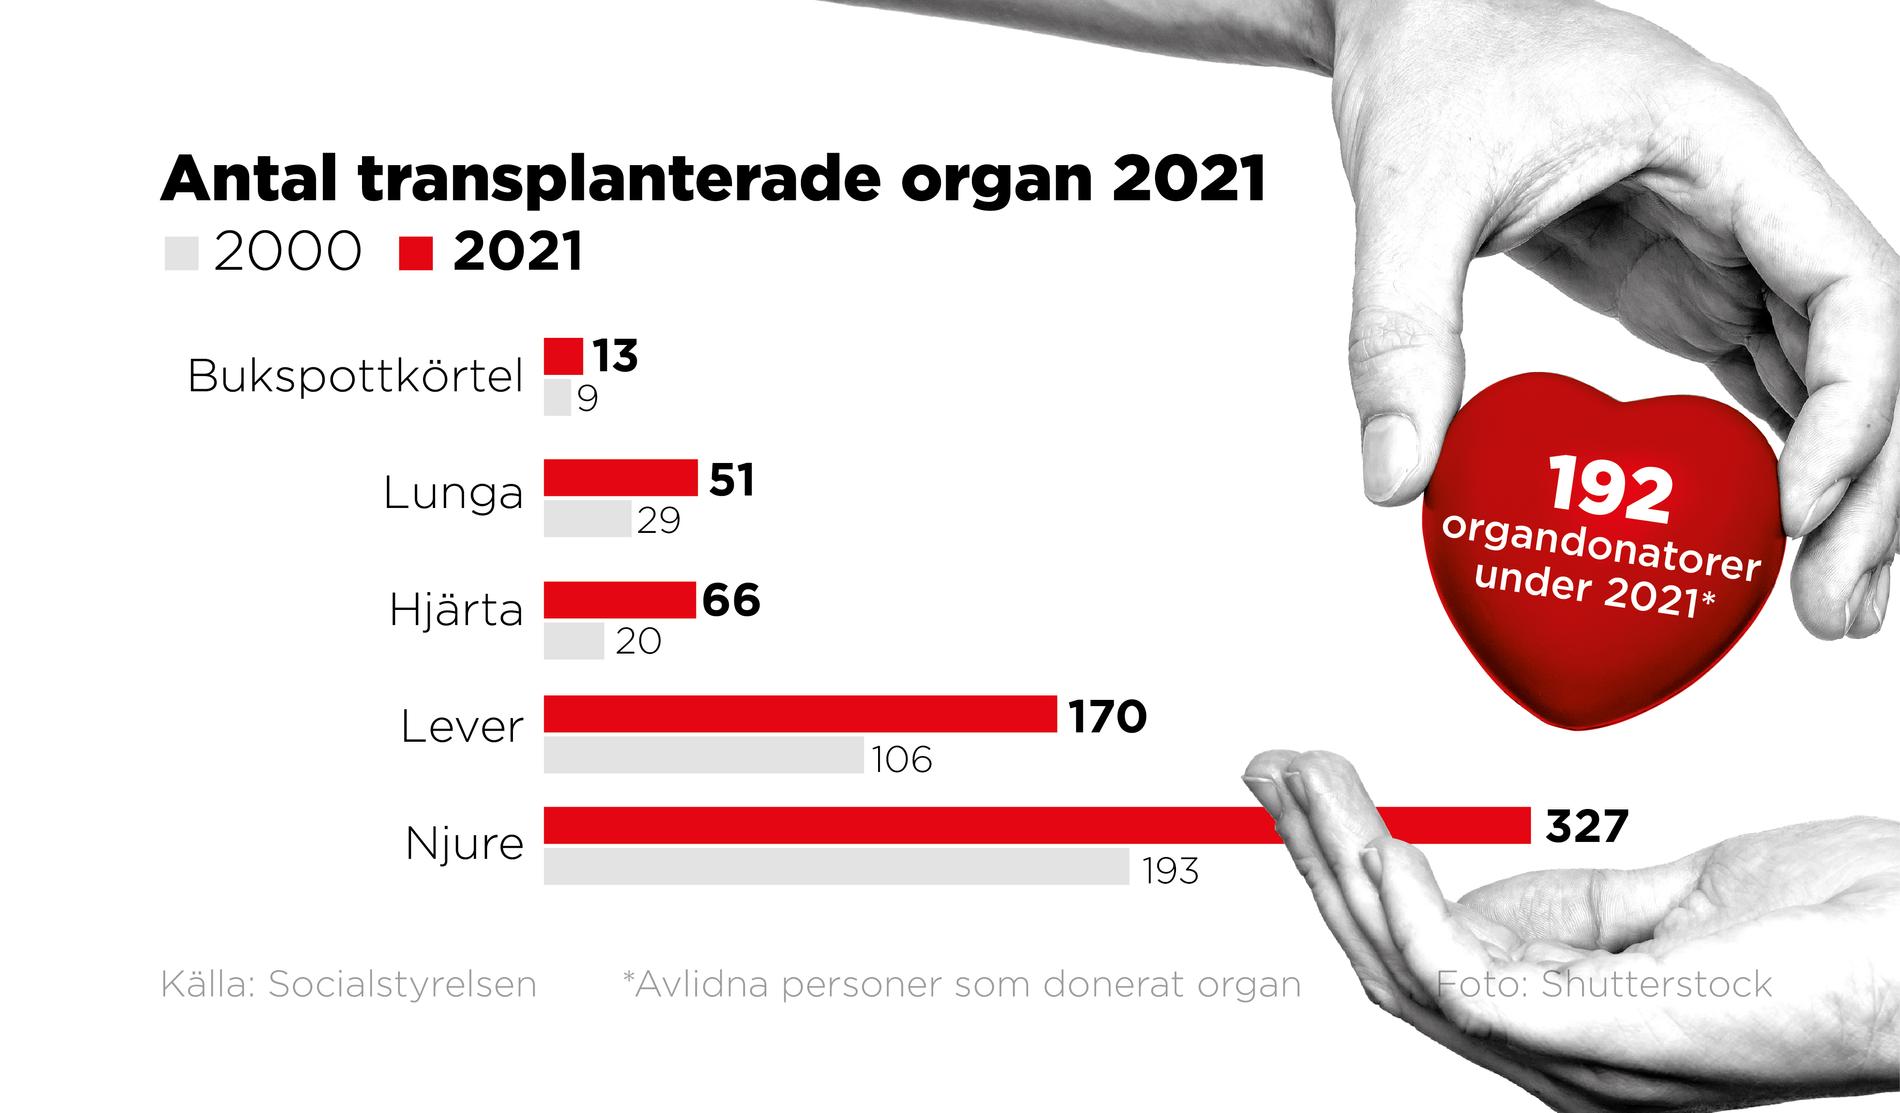 2021 blev 192 avlidna personer organdonatorer och bidrog till att 631 organ kunde transplanteras till svårt sjuka patienter.